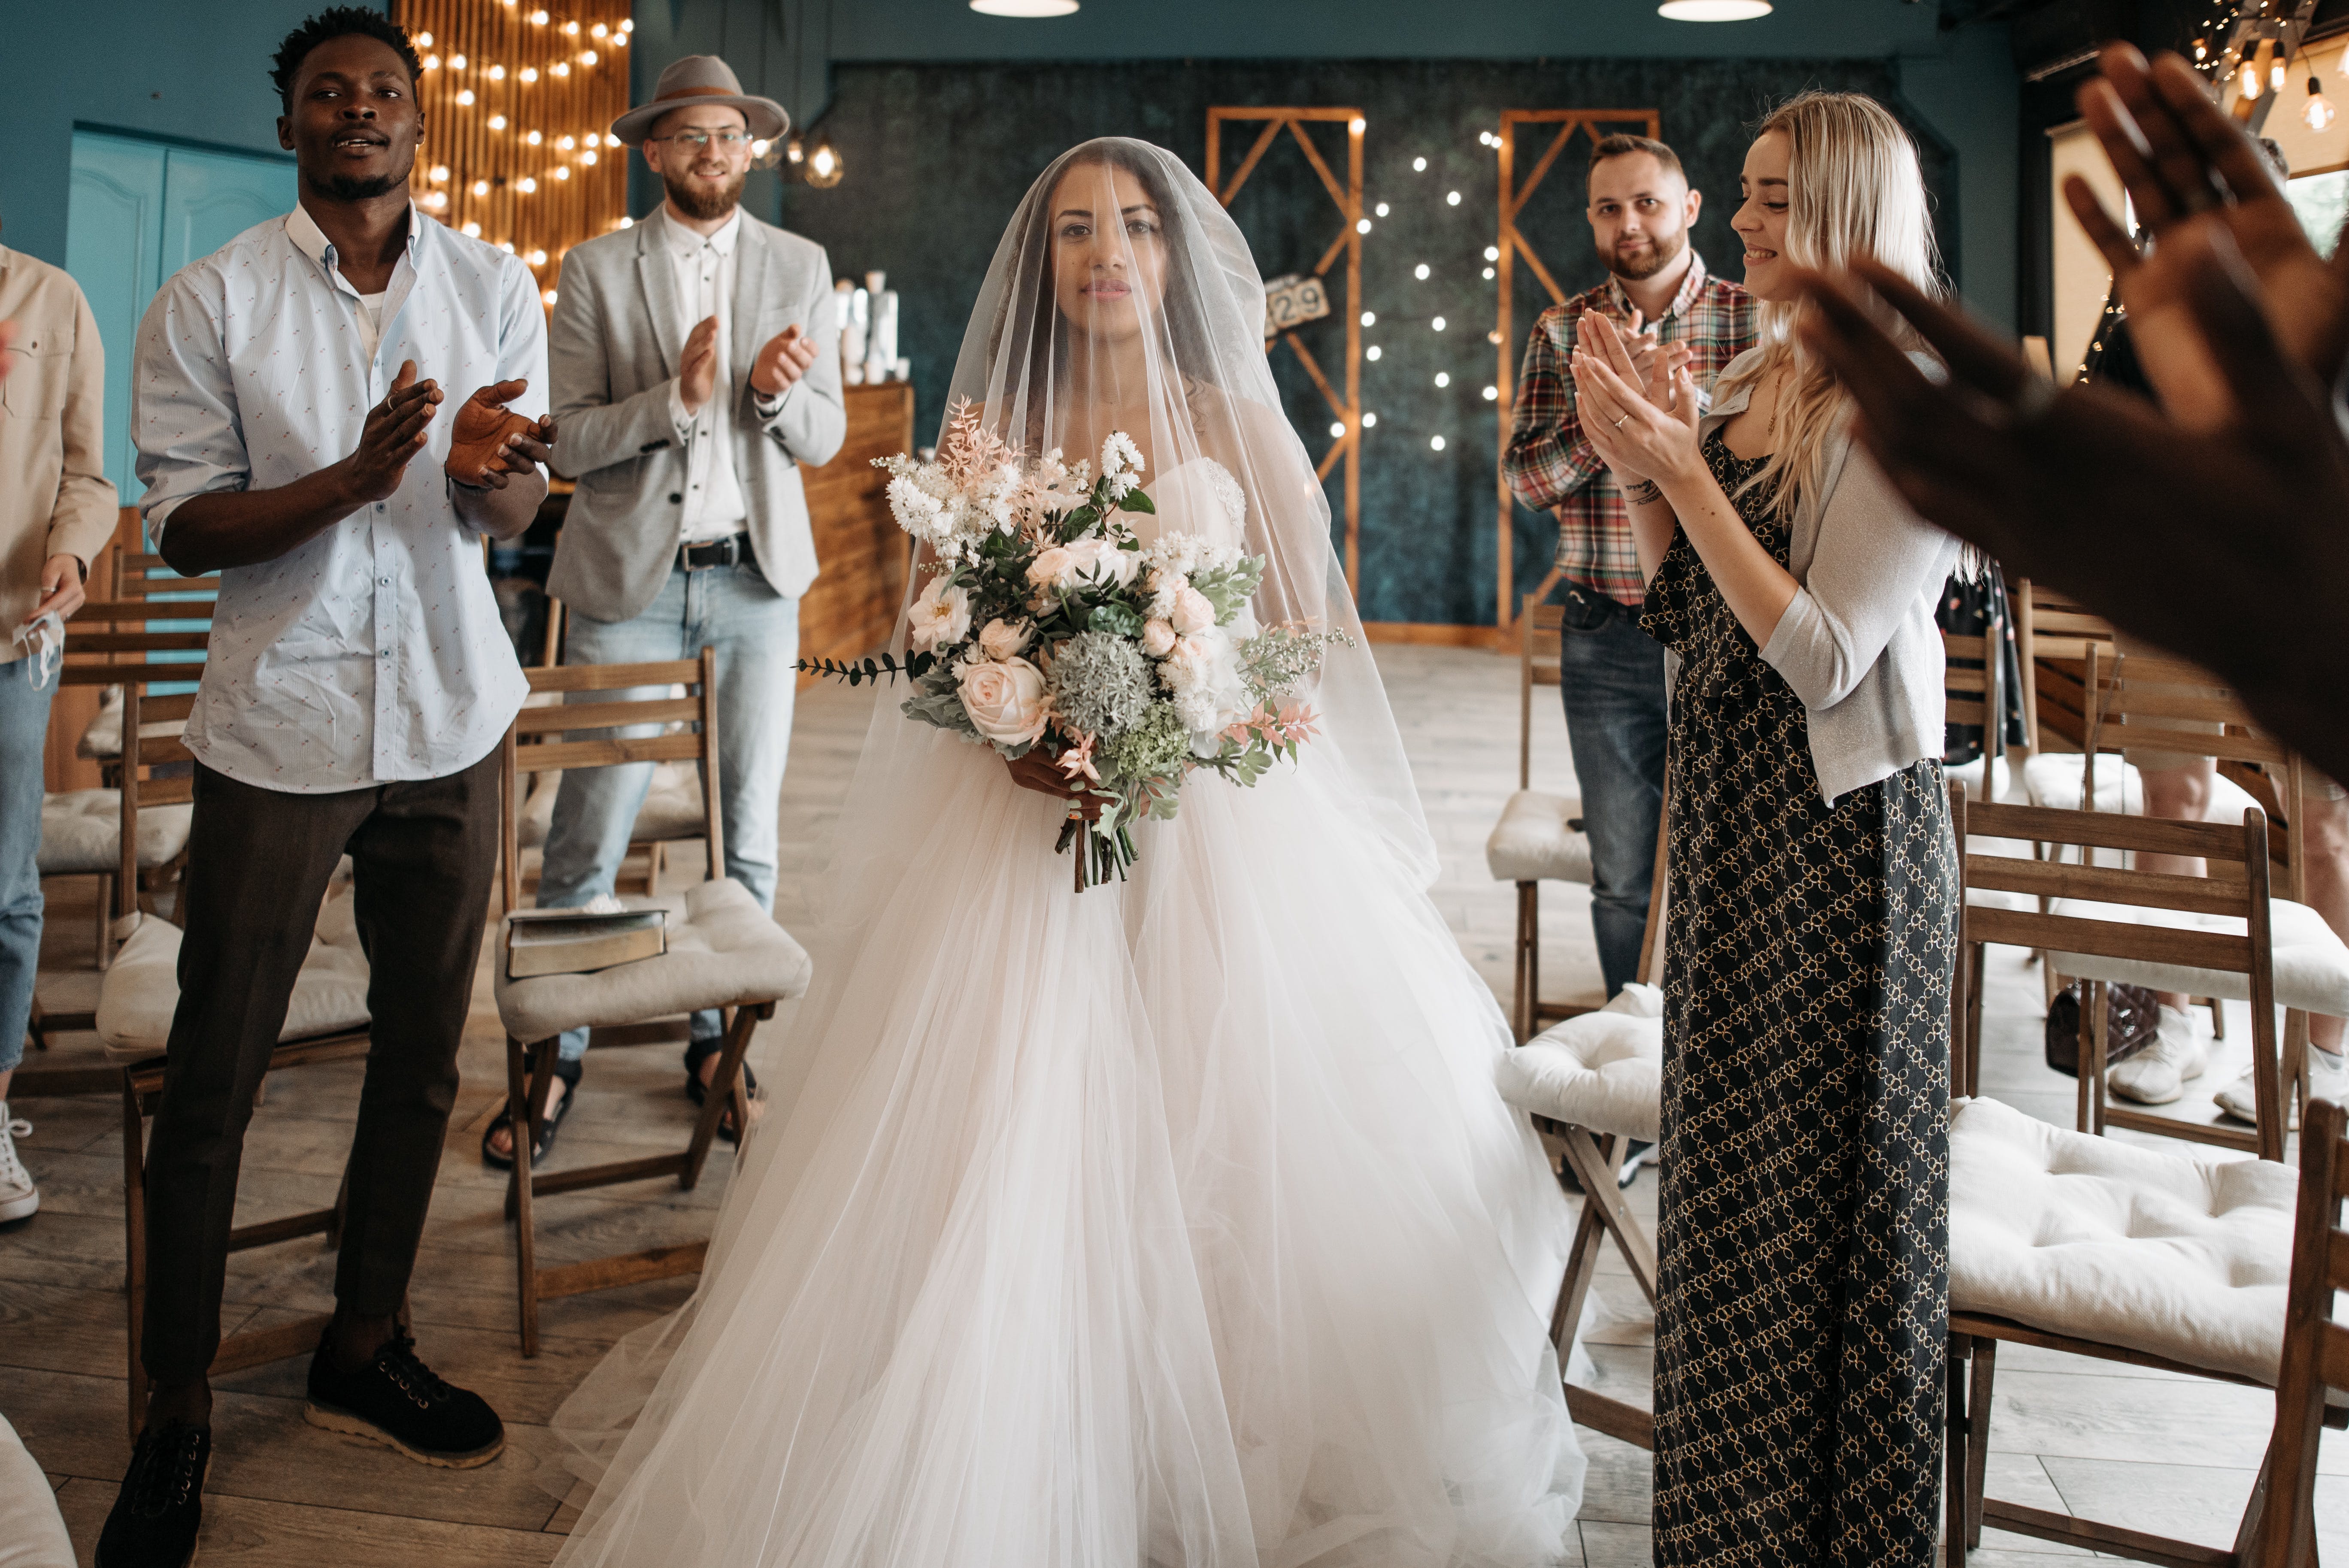 Gäste klatschen in die Hände und stehen für die Braut auf | Quelle: Pexels